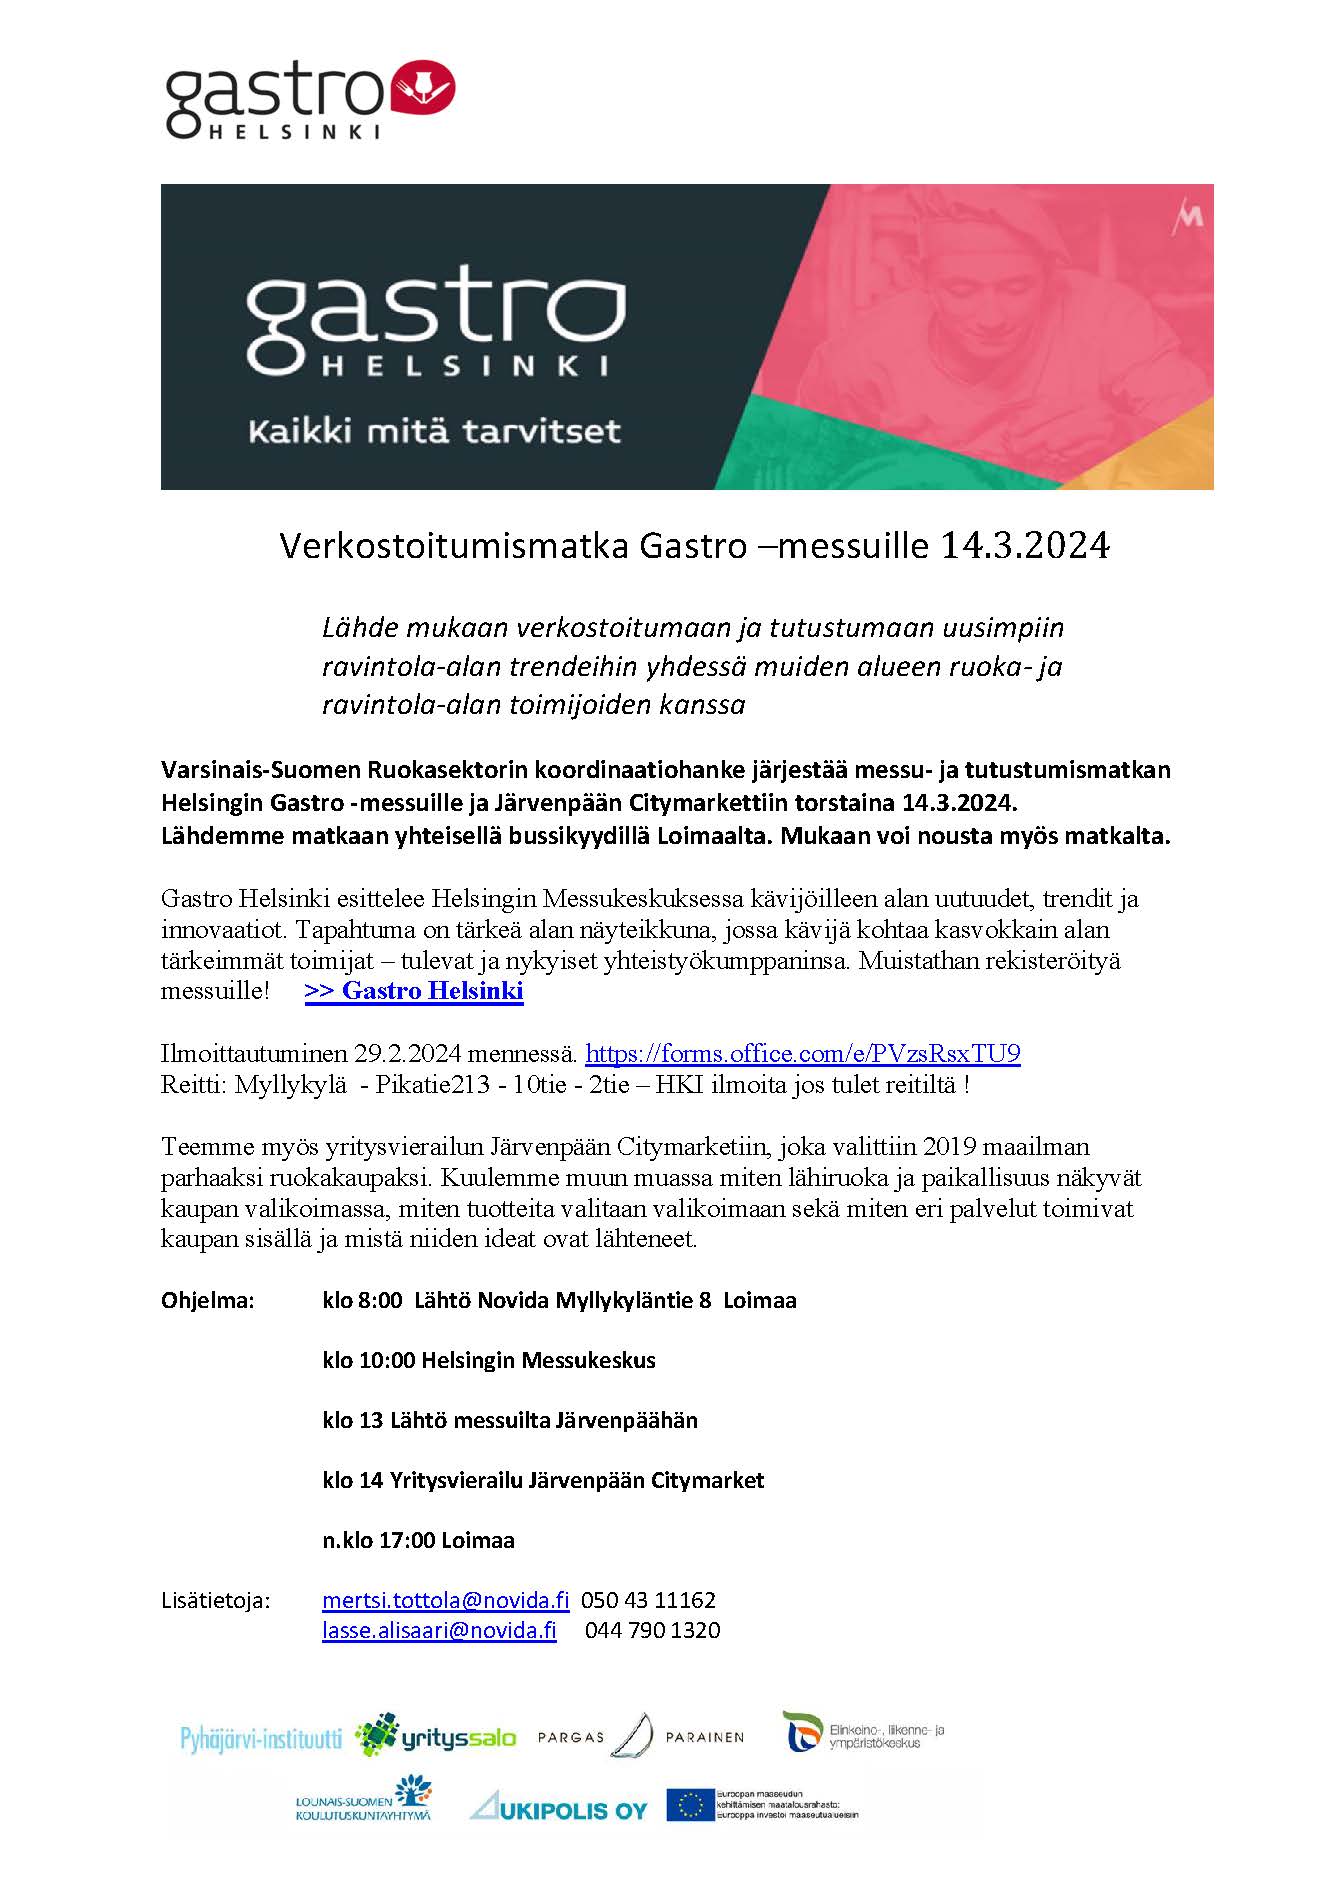 Esite Gastro-messuista 14.3.2024 sekä verkostoitumismatkasta Järvenpään Citymarkettiin